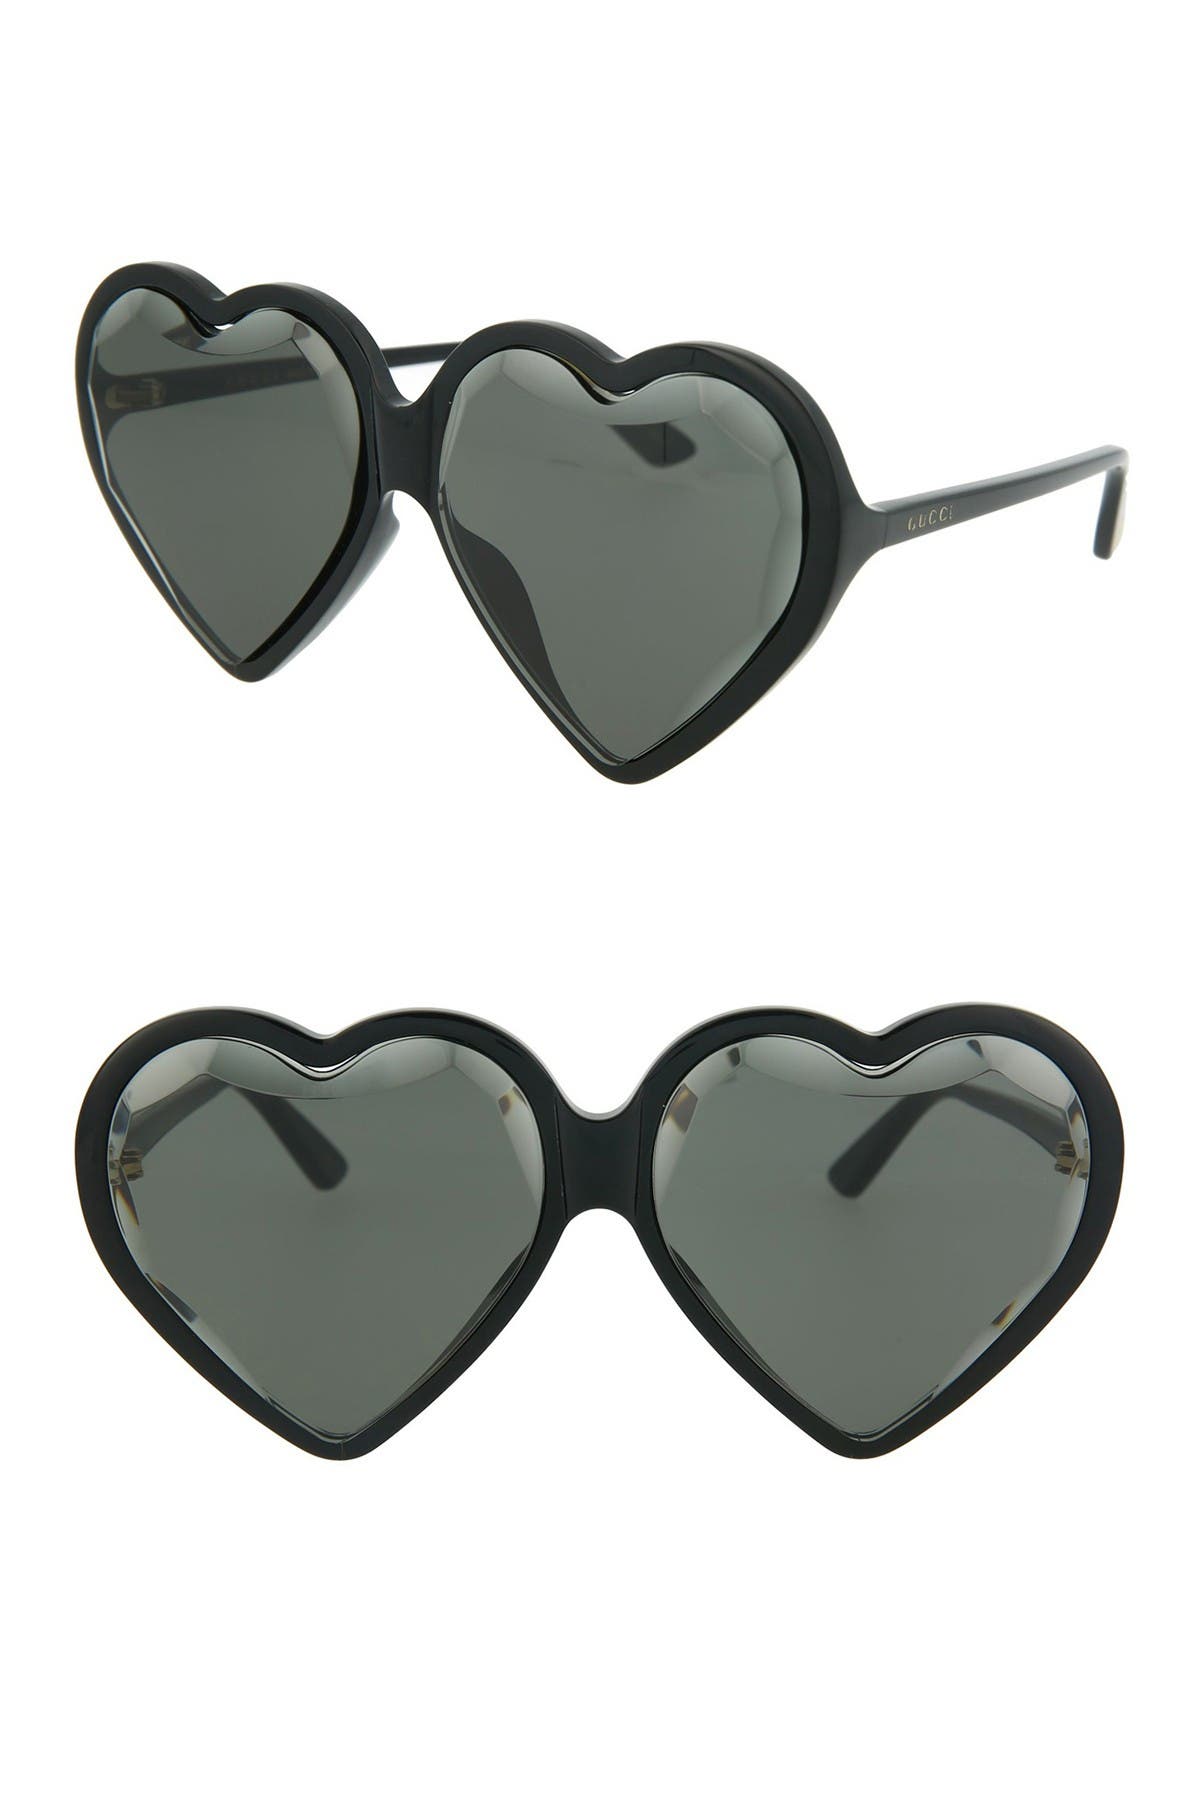 gucci black heart sunglasses